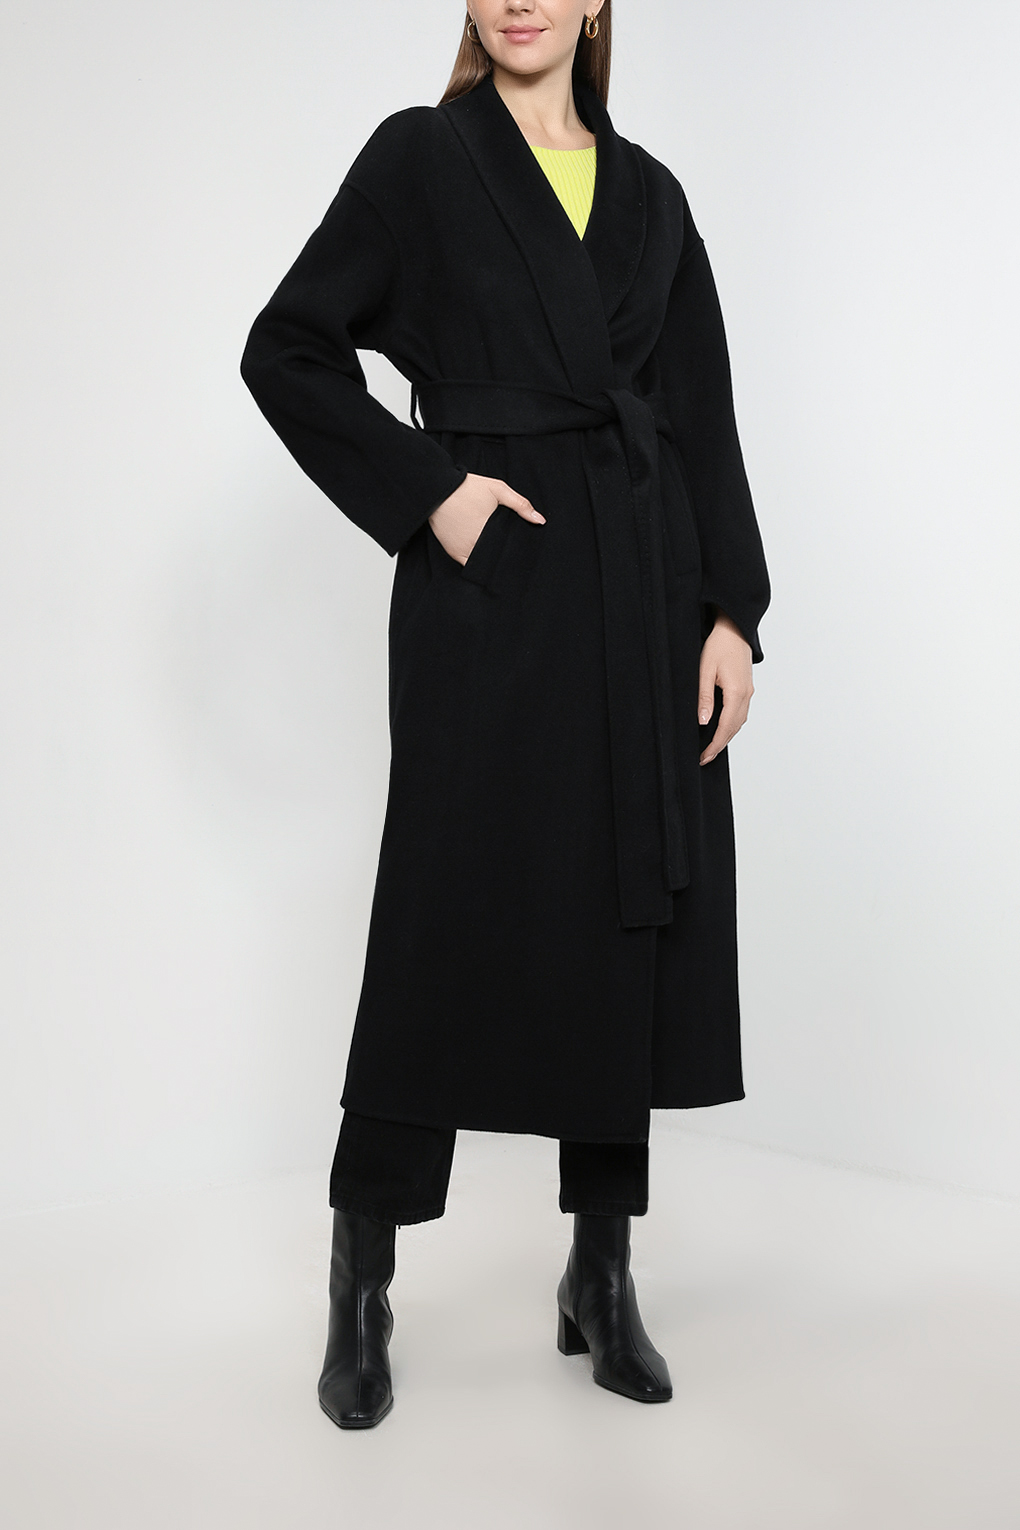 Пальто женское SABRINA SCALA SS23016206-001 черное 50 RU